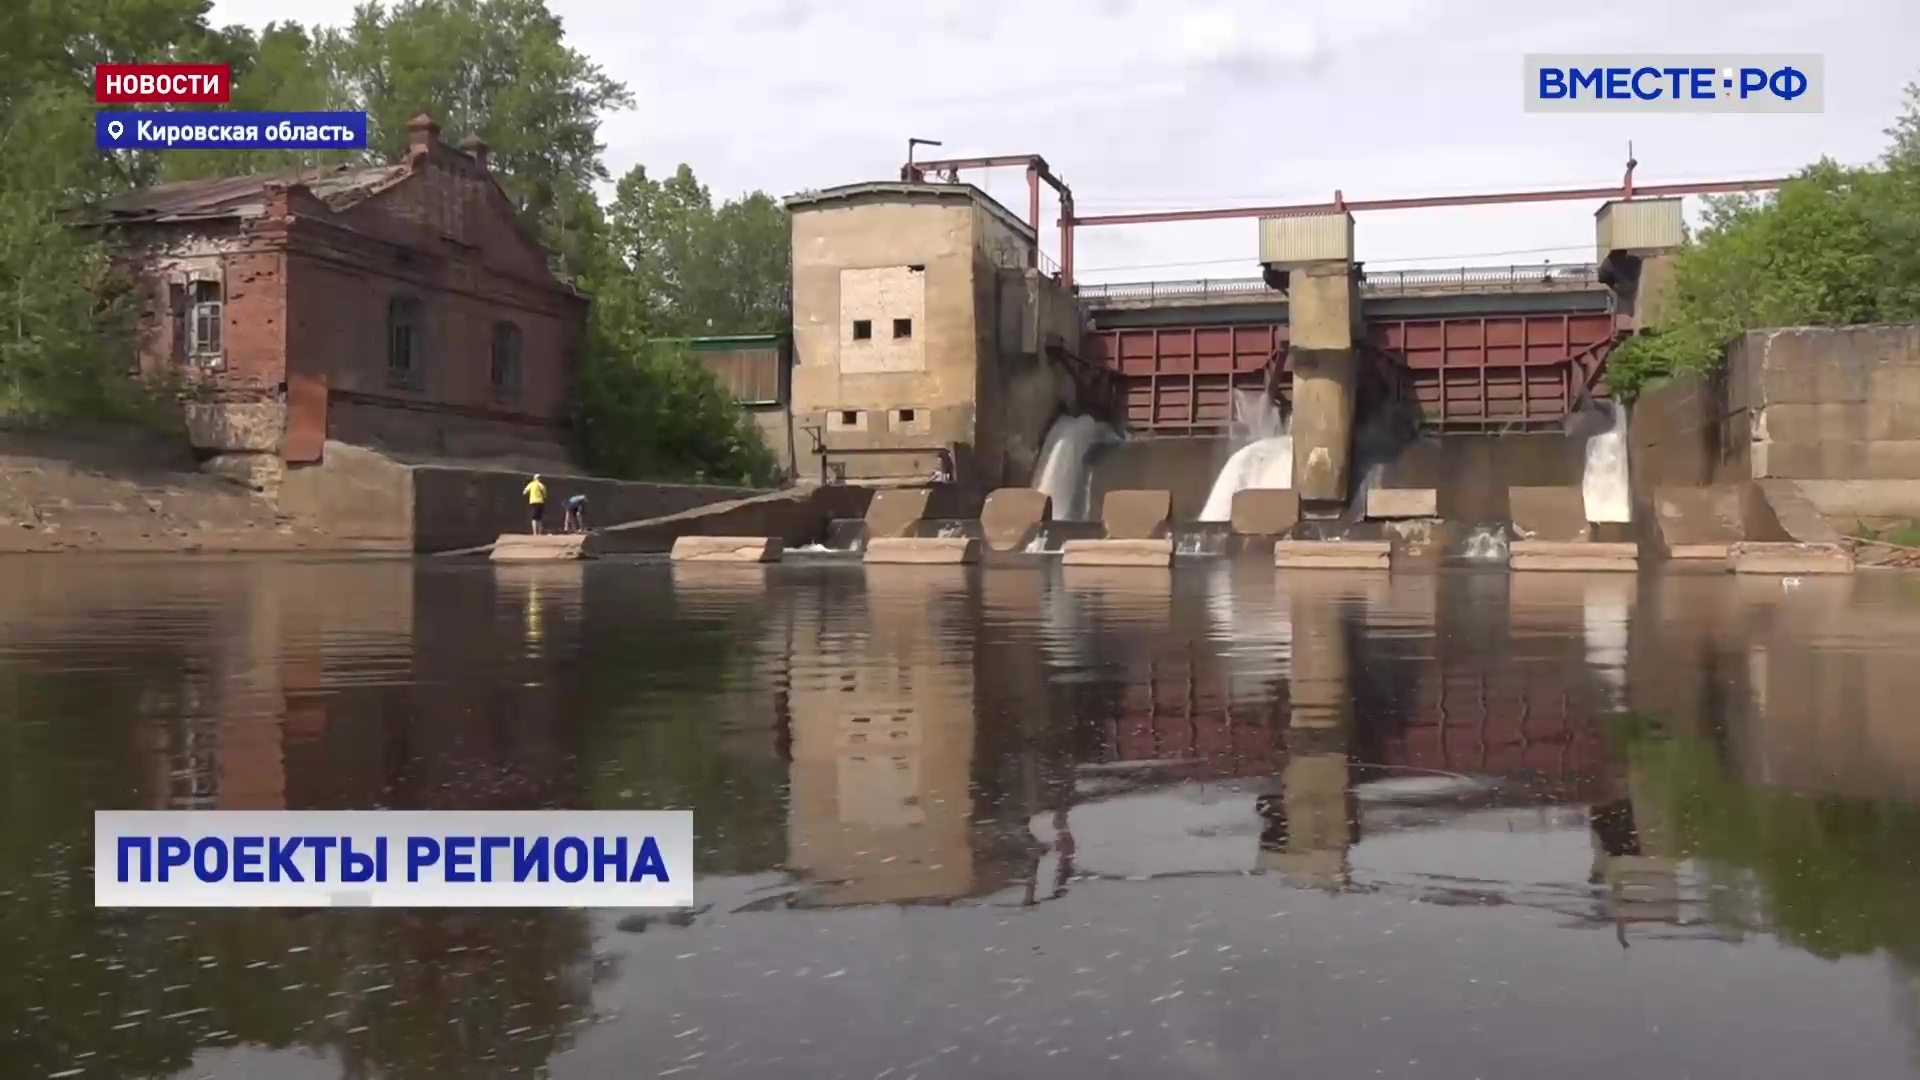 Сенаторы помогут Кировской области решить вопрос с берегоукрепленим